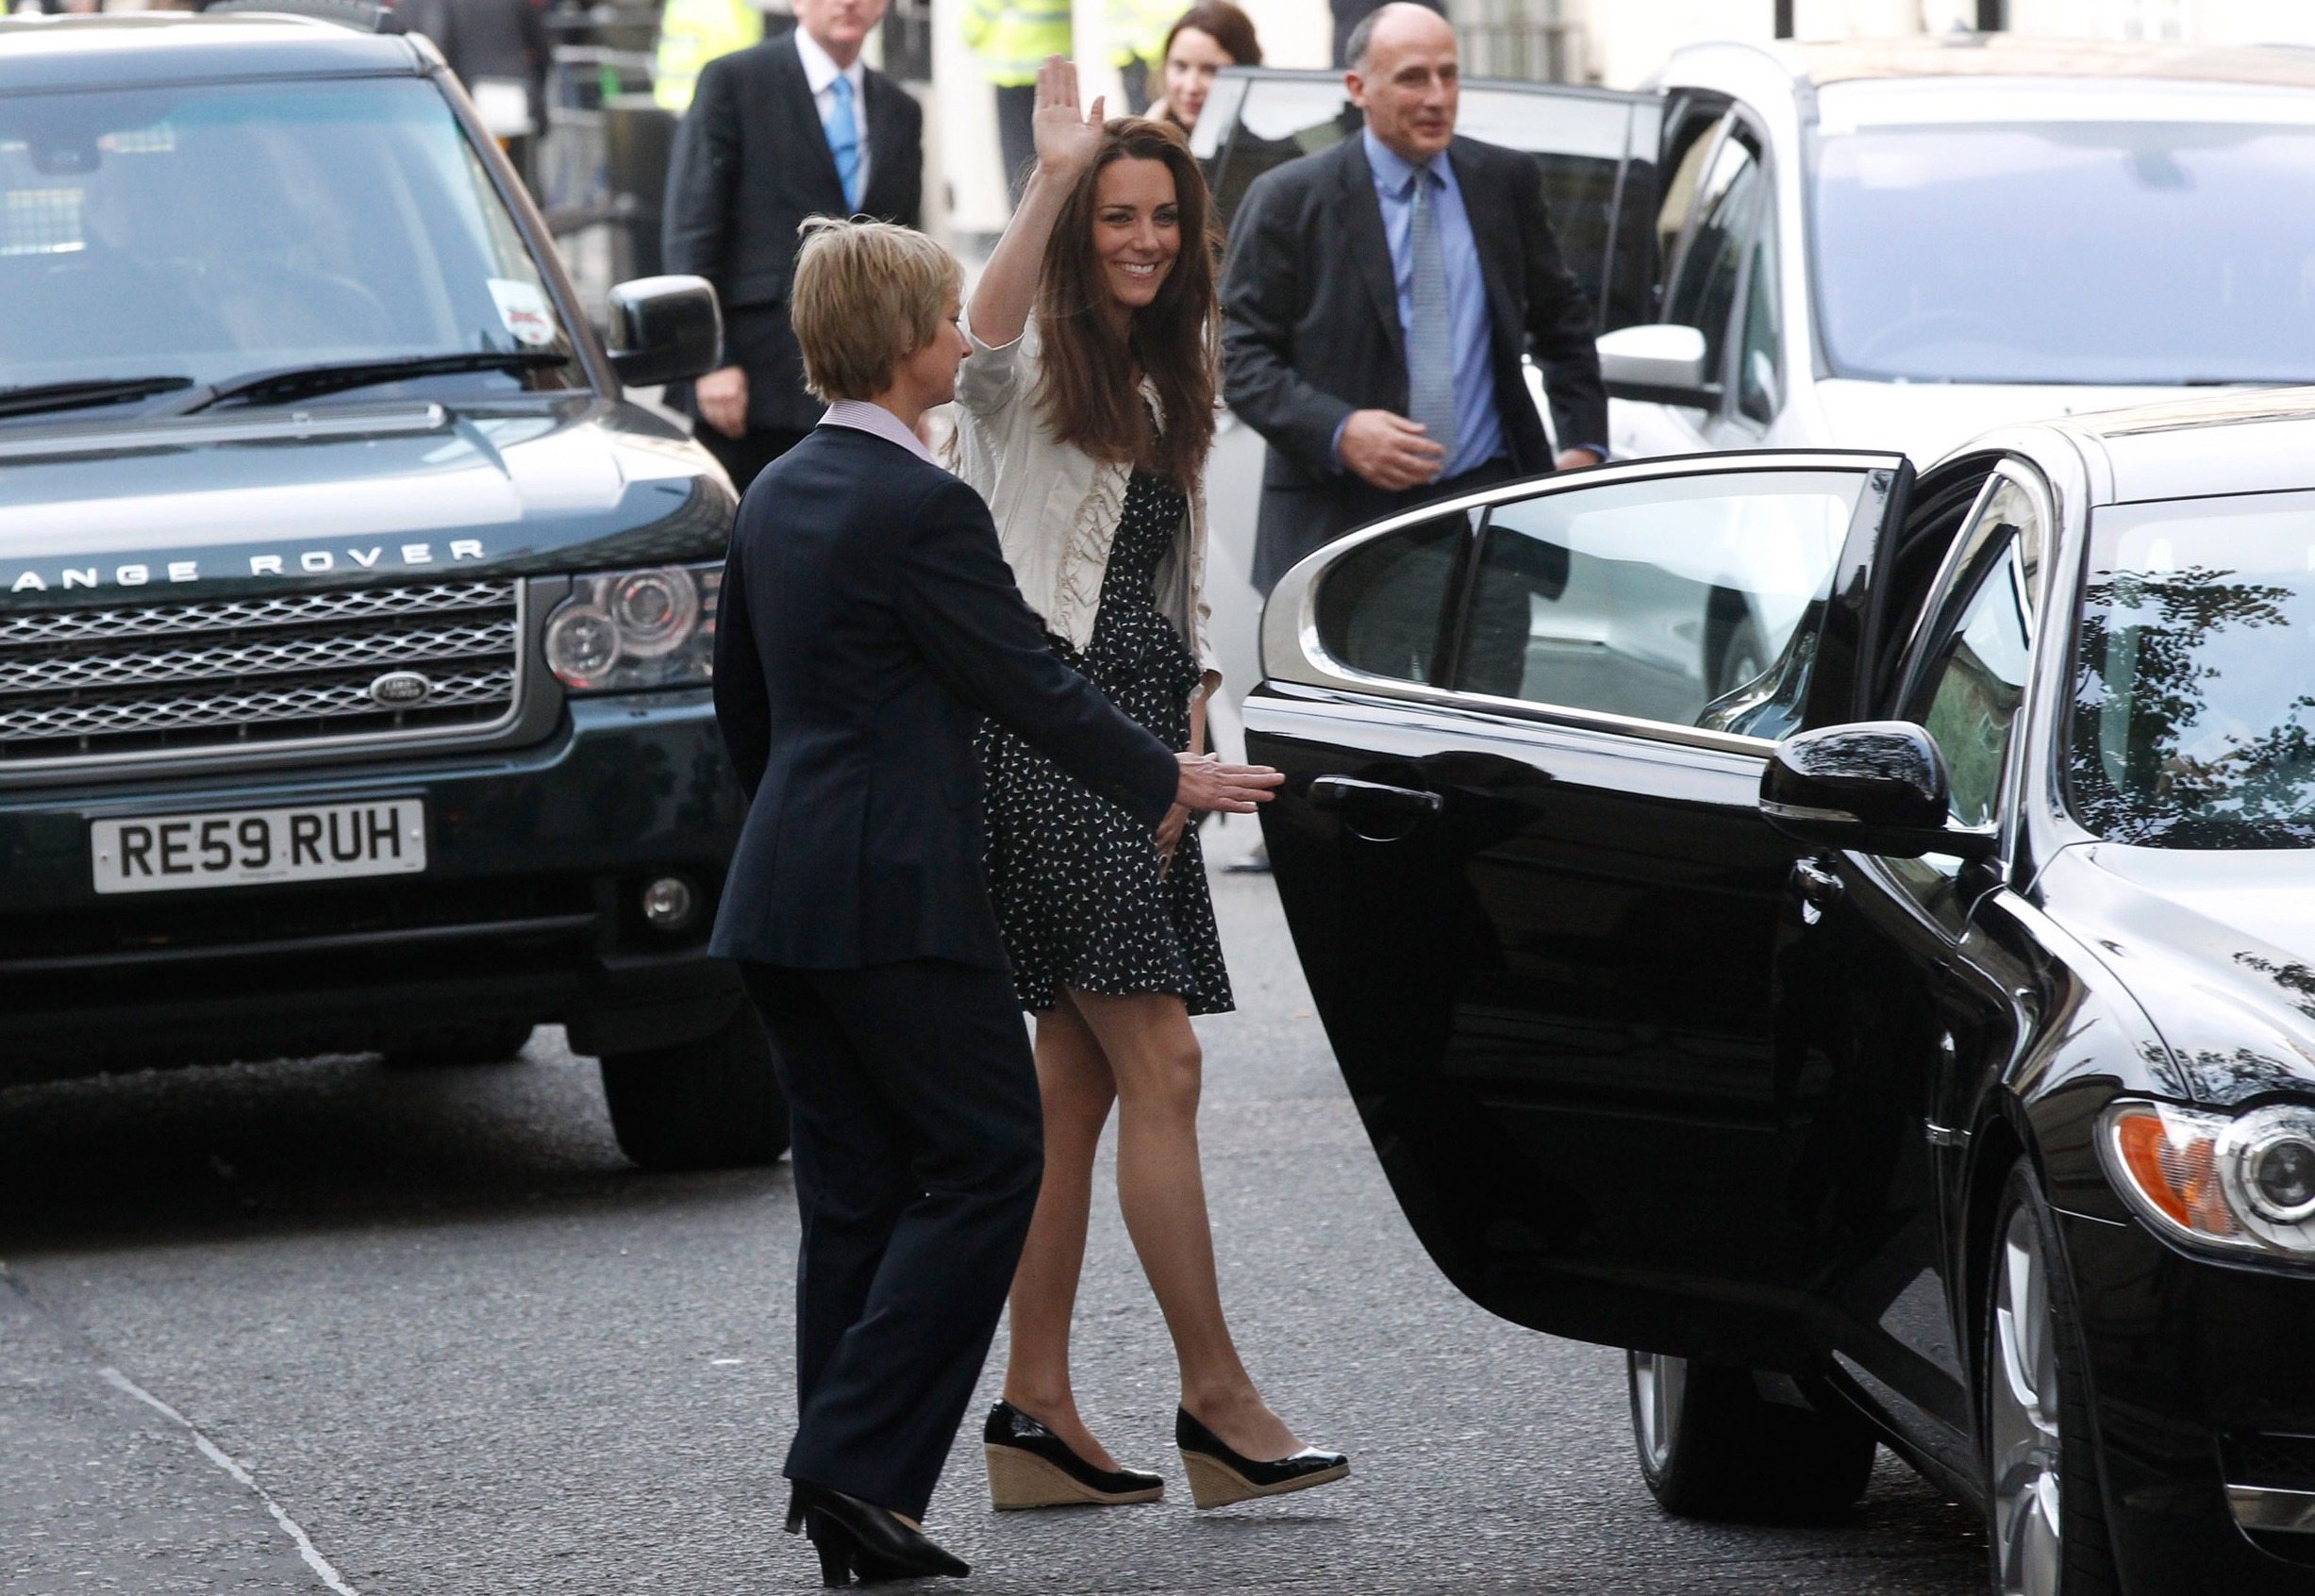 Kate Middleton wearing wedges